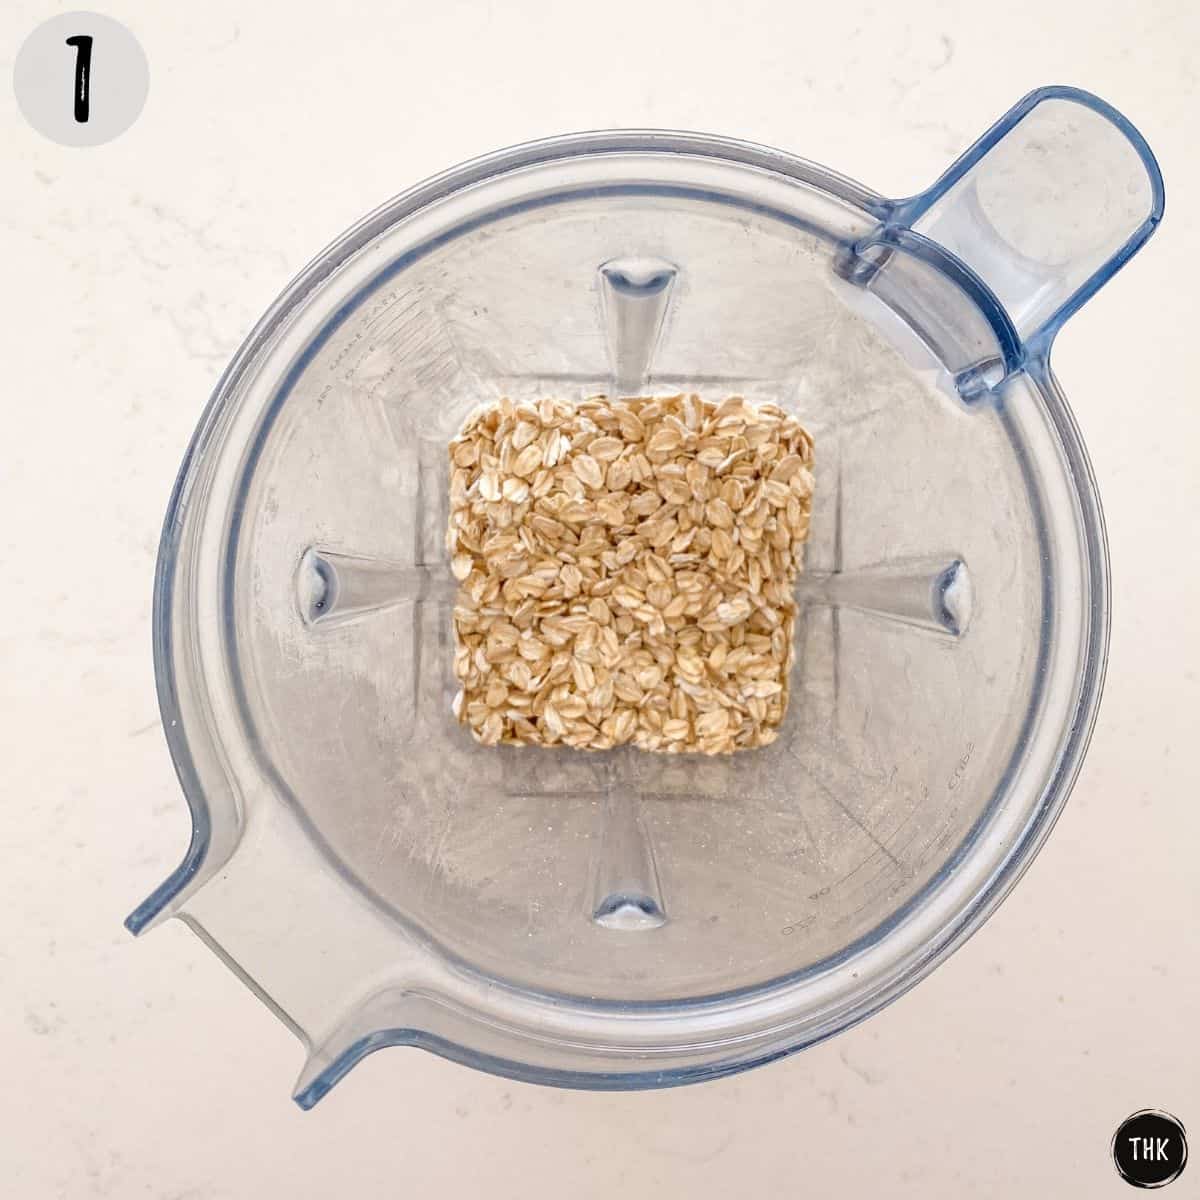 Rolled oats inside blender.